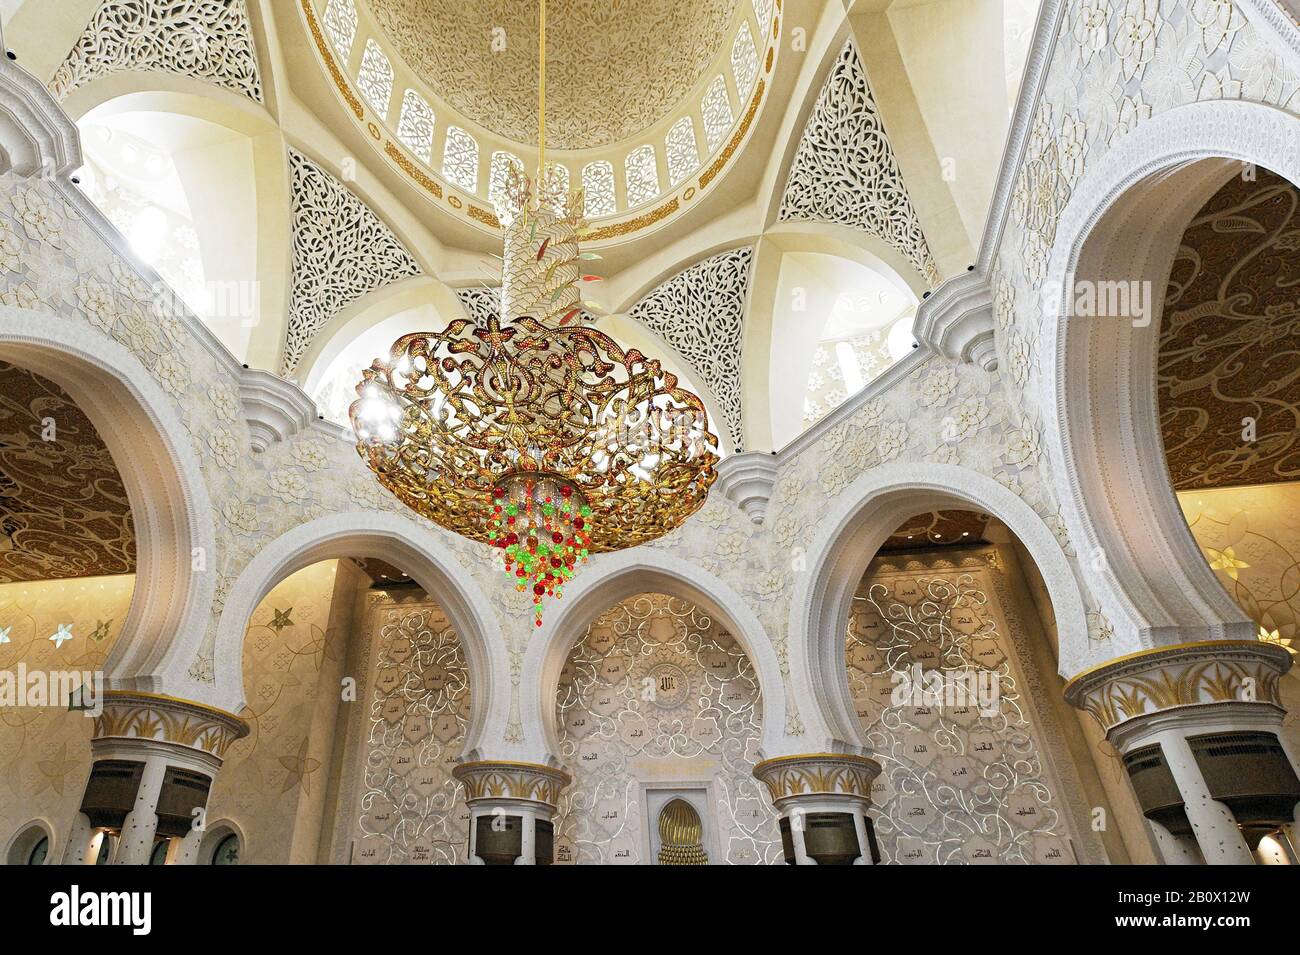 Chandelier Dans La Salle De Prière De La Mosquée Sheikh Zayed Bin Sultan Al Nahyan, Émirat D'Abu Dhabi, Emirats Arabes Unis, Moyen-Orient, Asie, Banque D'Images